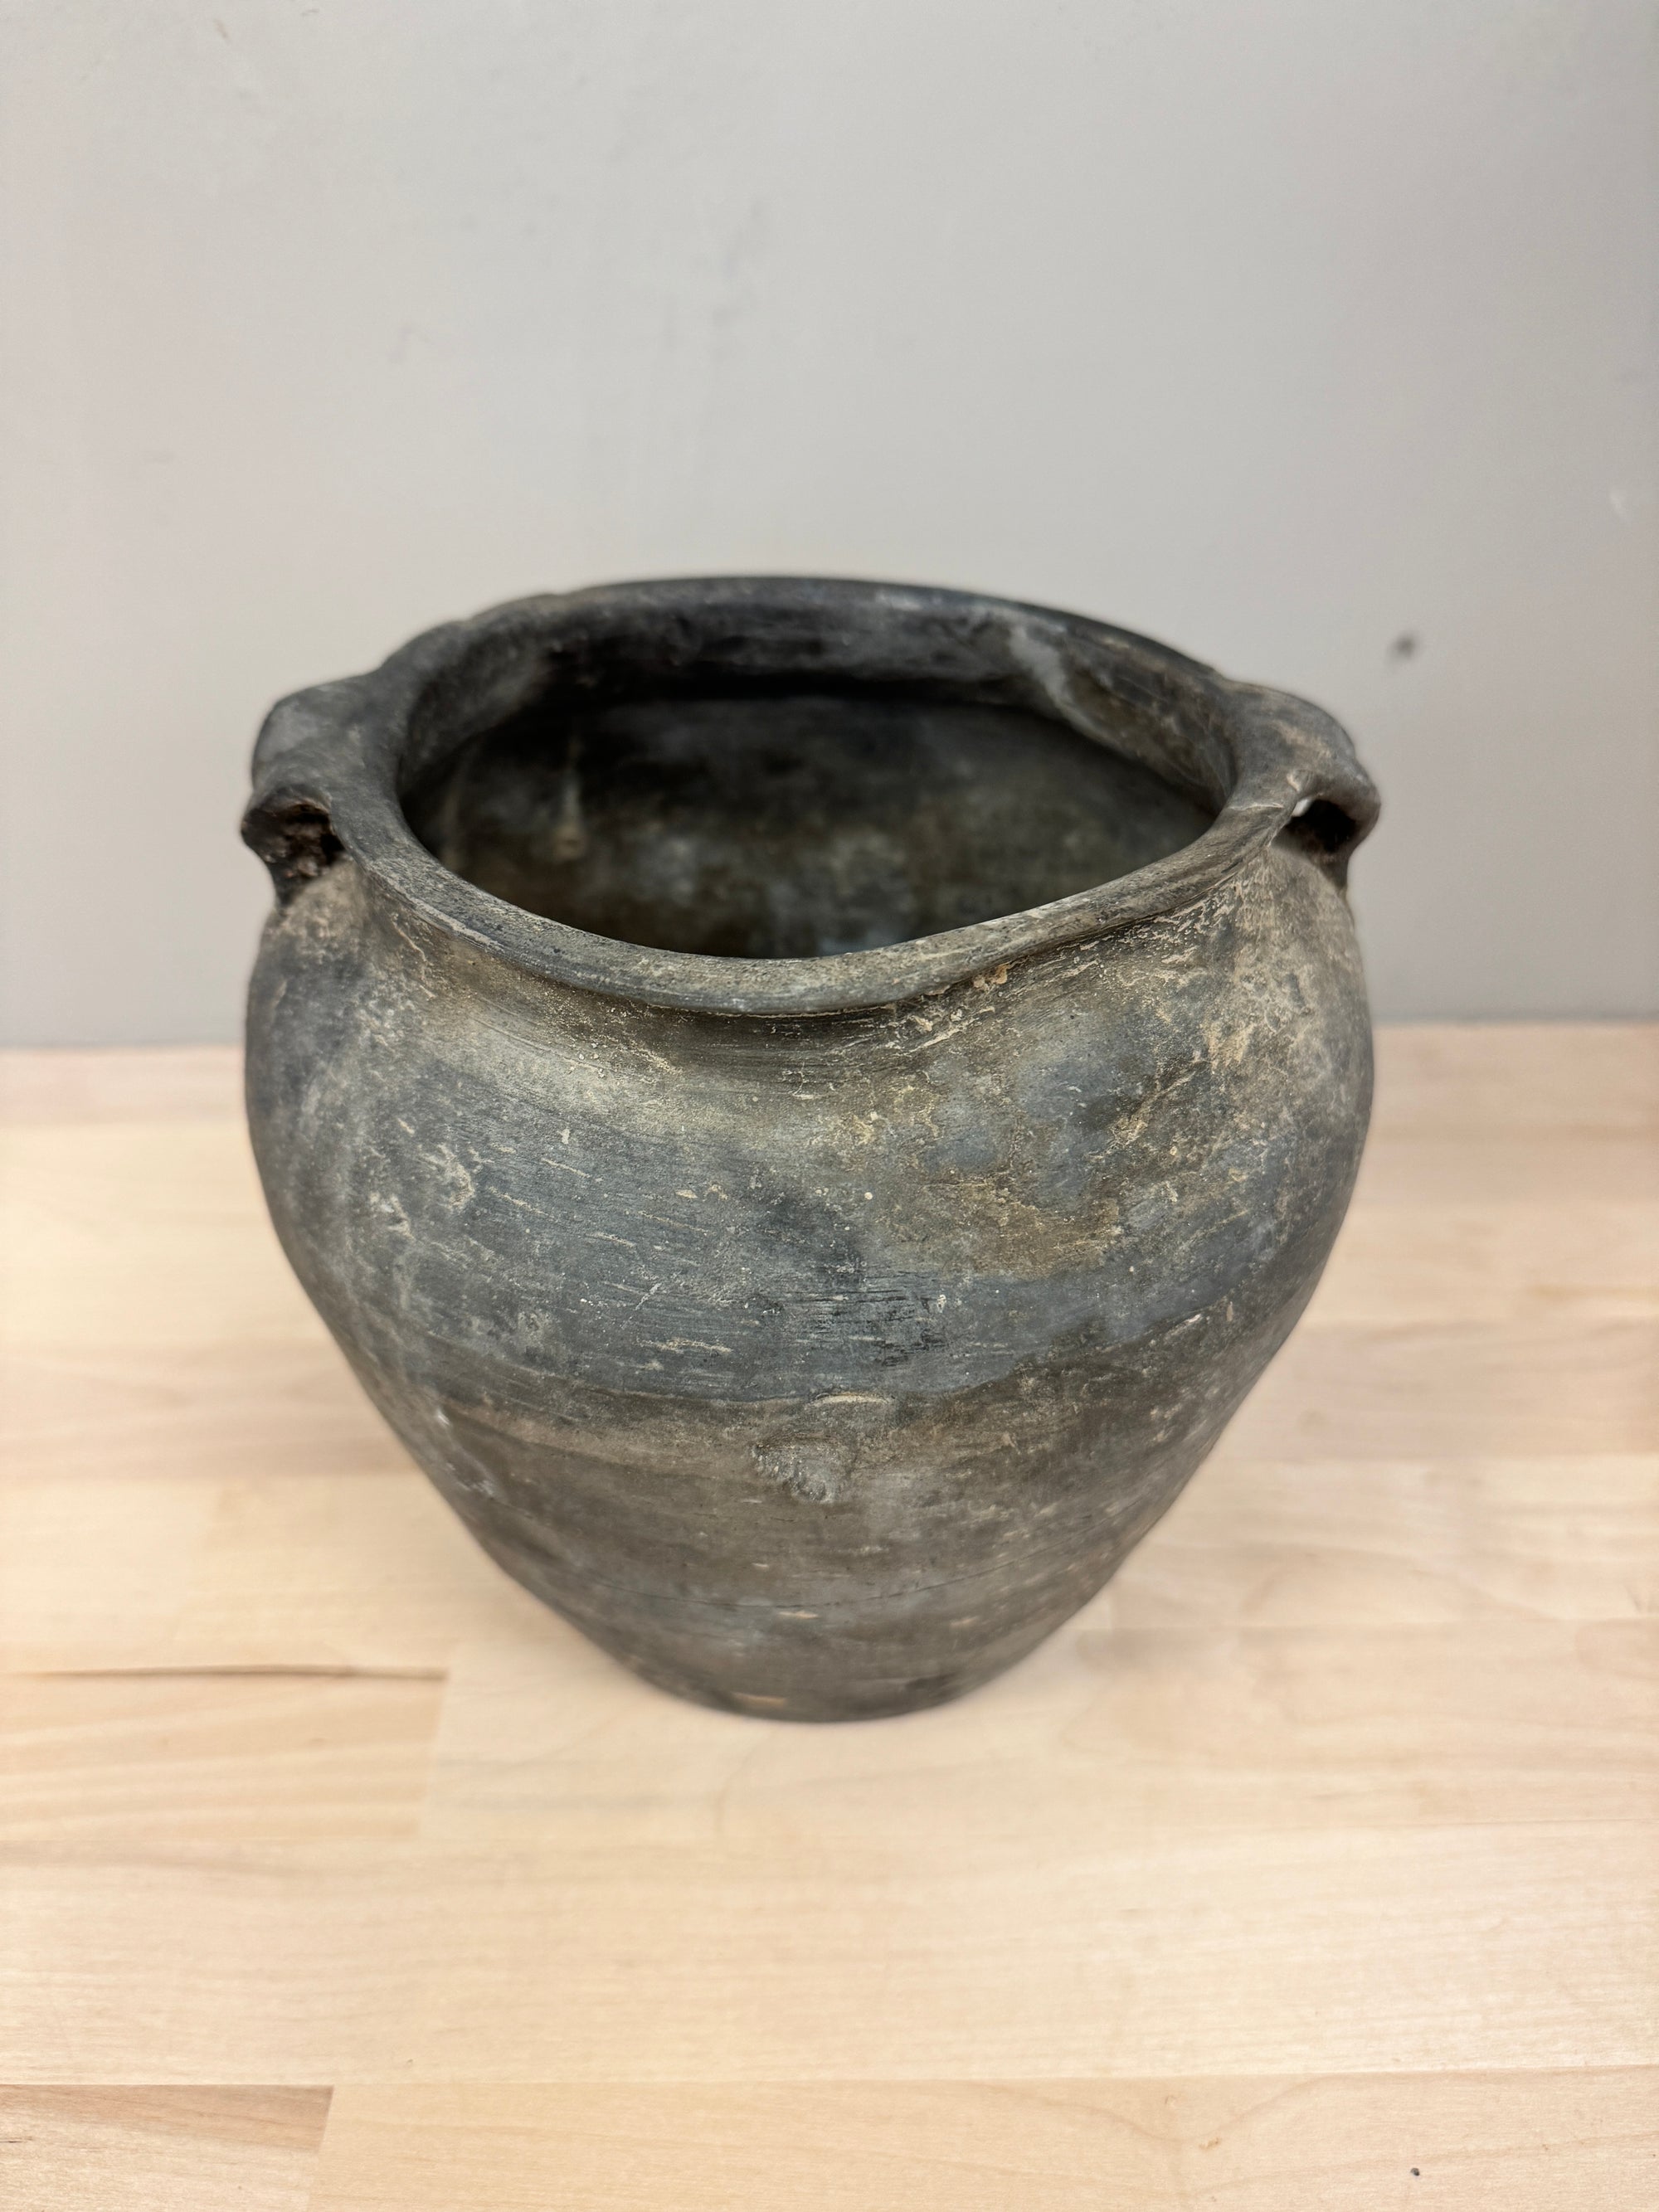 Vintage Clay Pots, Small